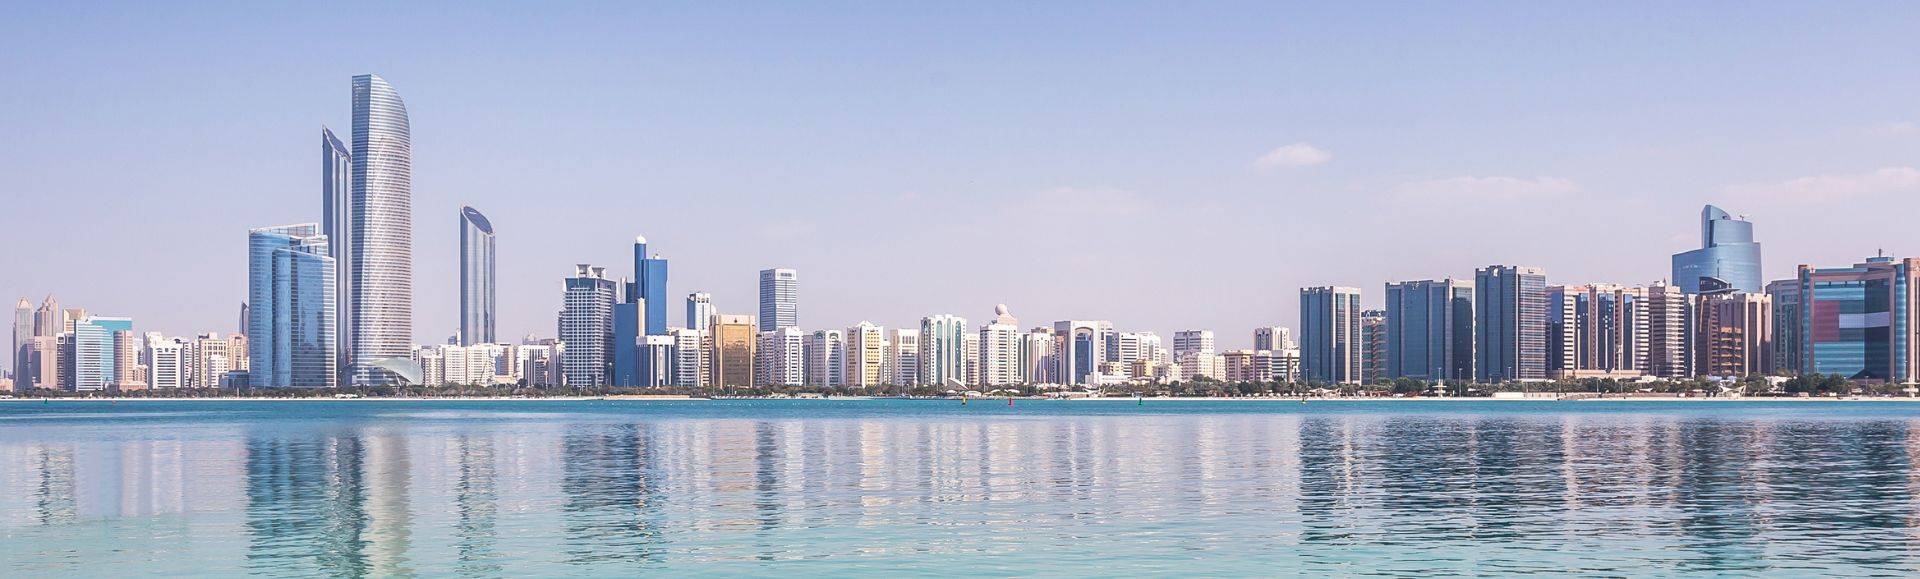 Abu Dhabi  sea view